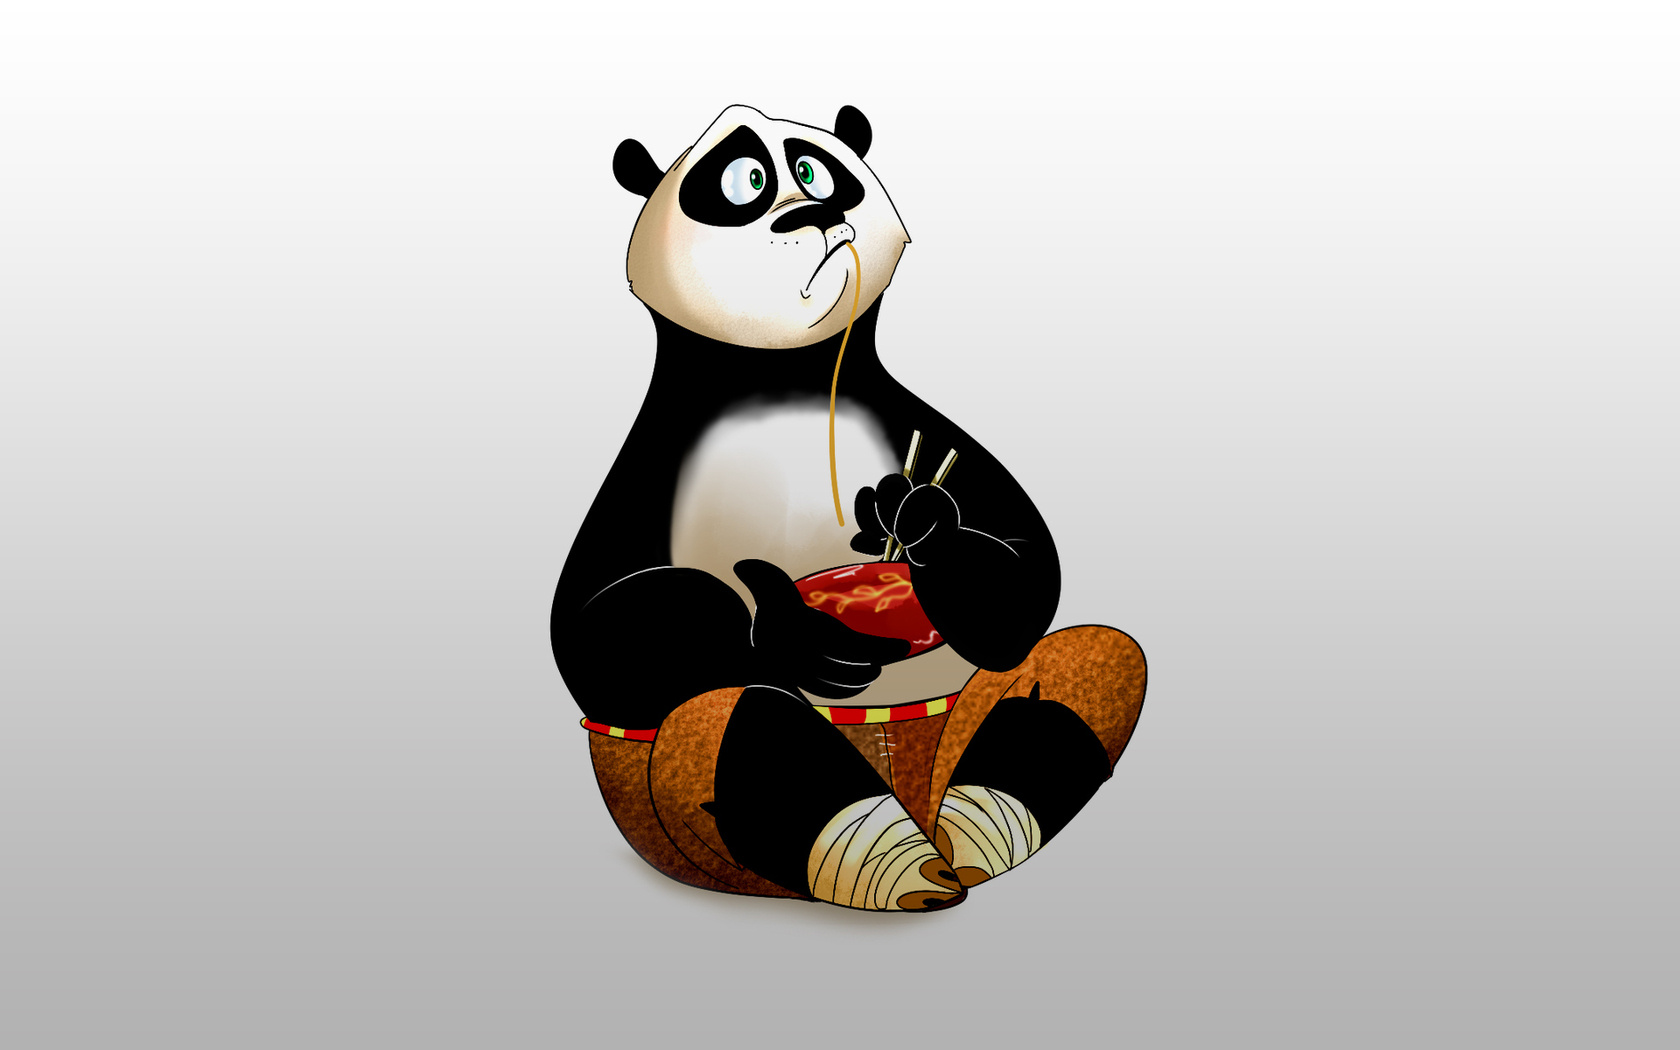 Descarga gratis la imagen Kung Fu Panda, Películas en el escritorio de tu PC